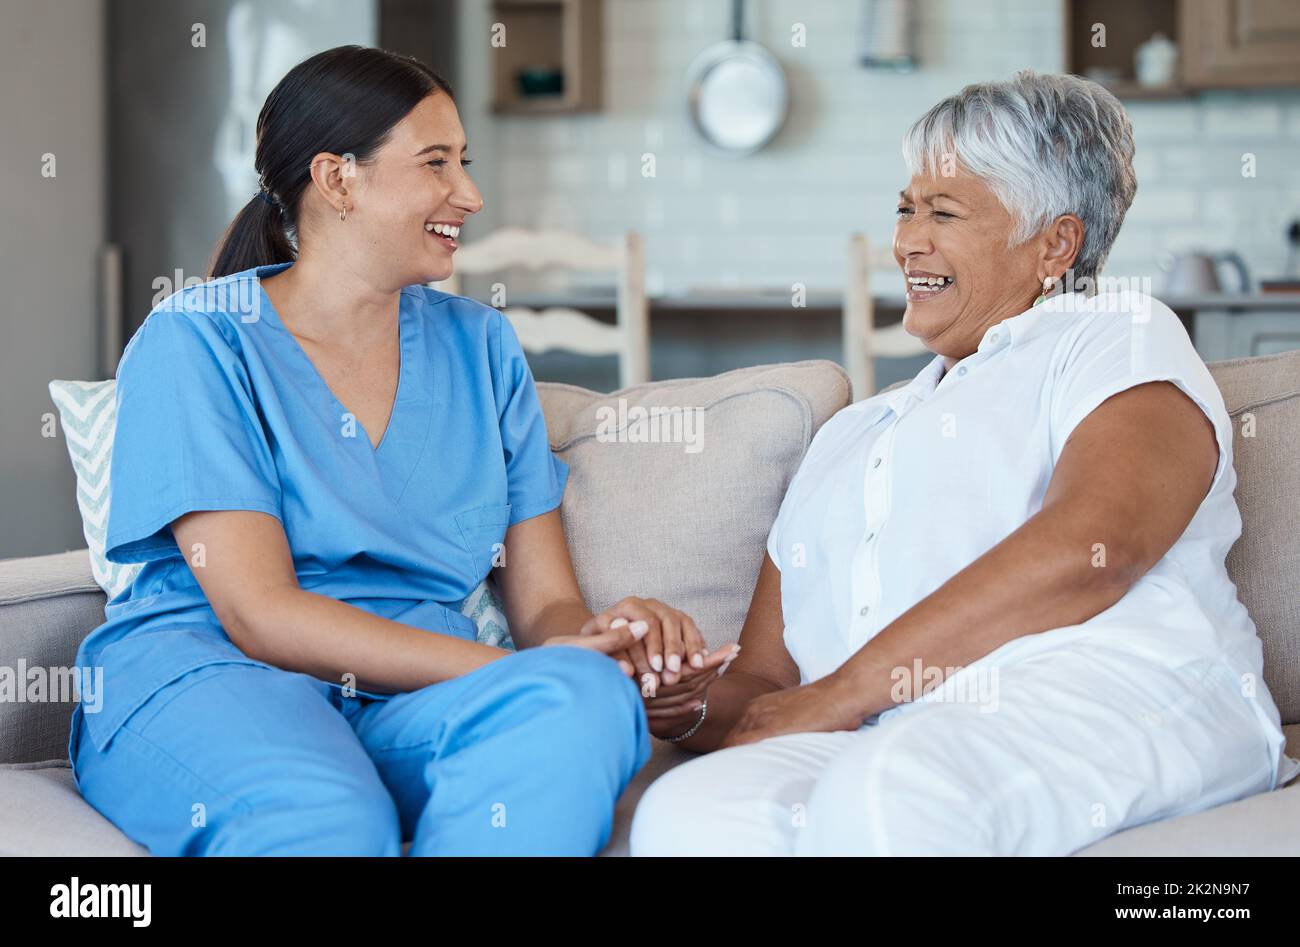 Pasar un poco de una vez con sus pacientes. Retrato recortado de una atractiva mujer mayor y su enfermera femenina en el hogar de la vejez. Foto de stock